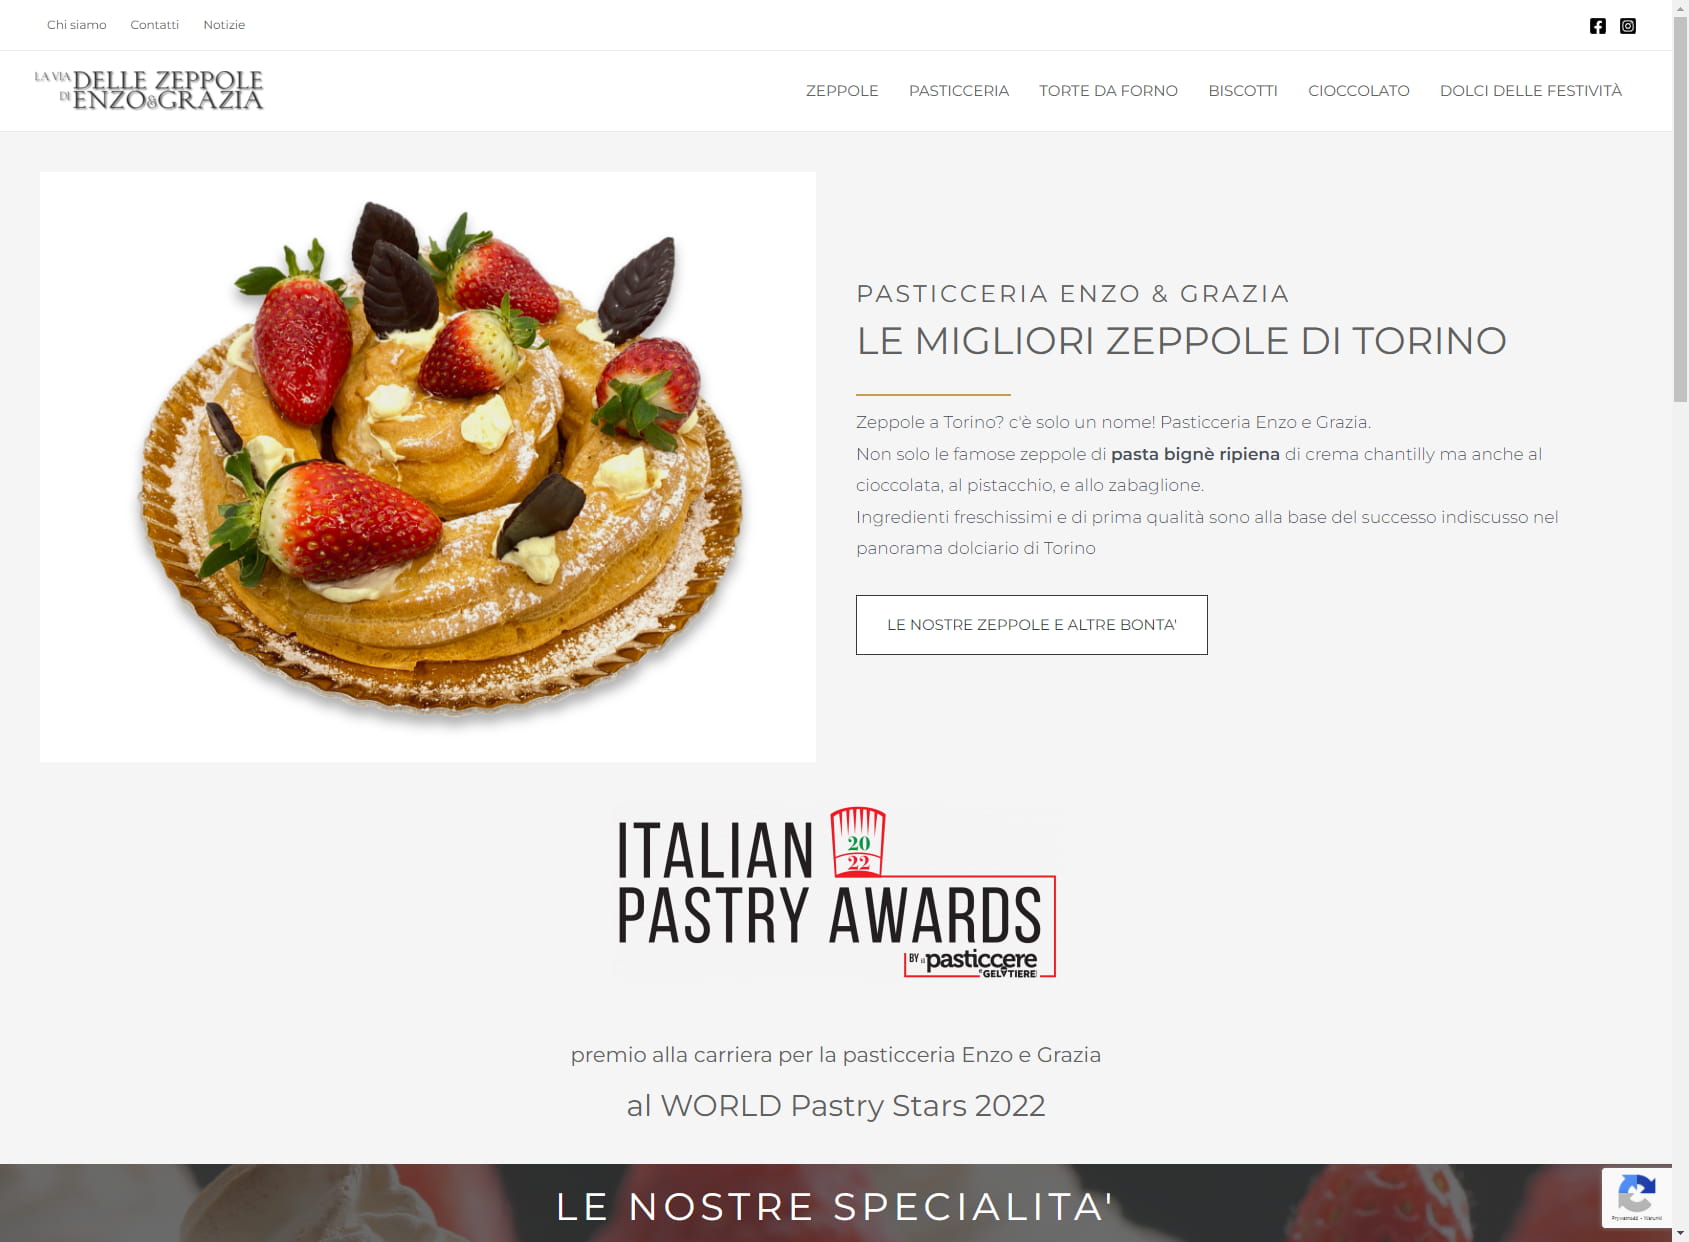 Pastry Enzo & Grazia, Turin